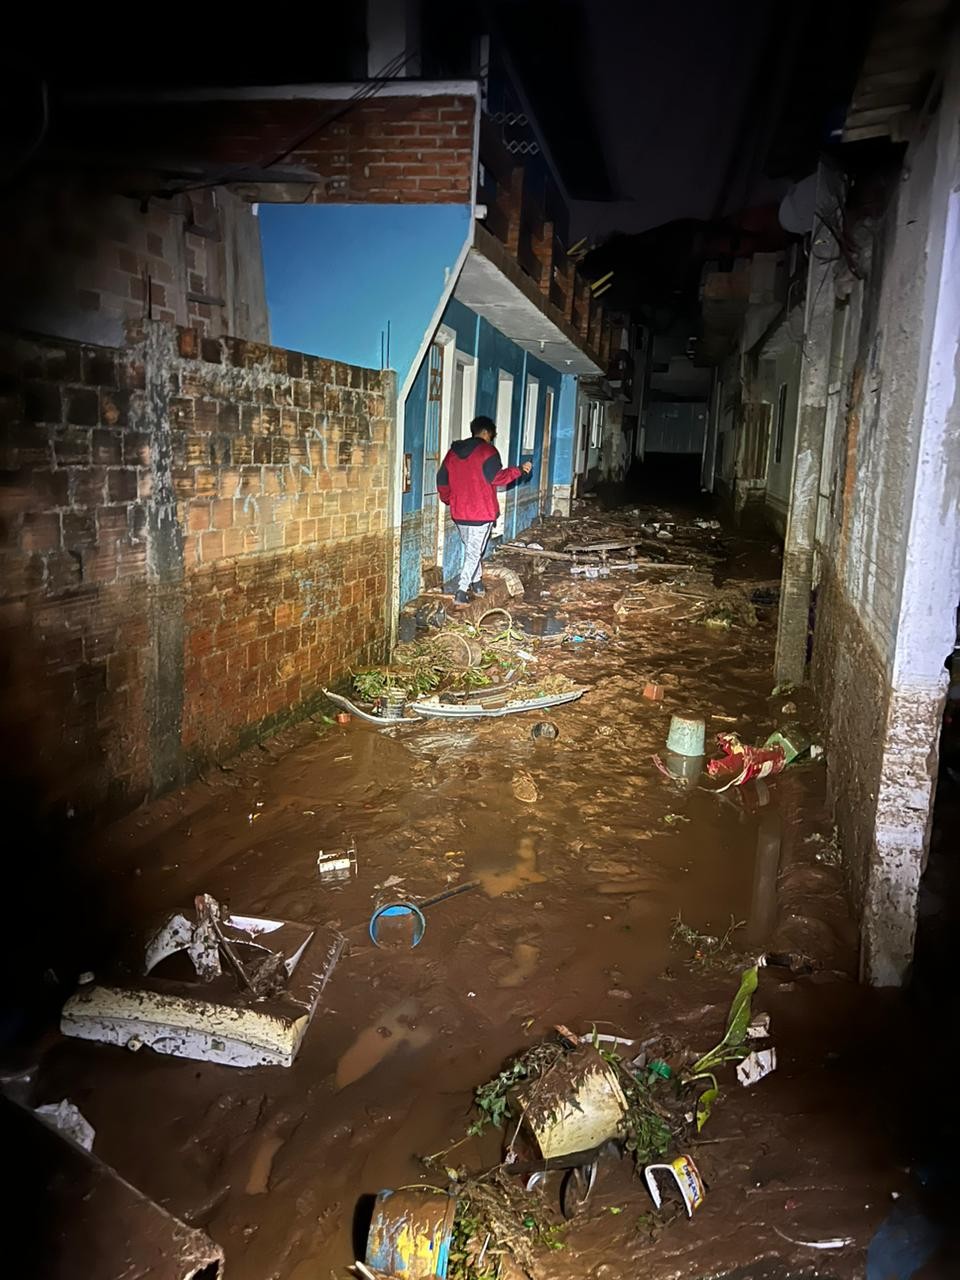 Reservatório de água rompe e inunda casas em Florianópolis — Foto: Divulgação Bombeiros